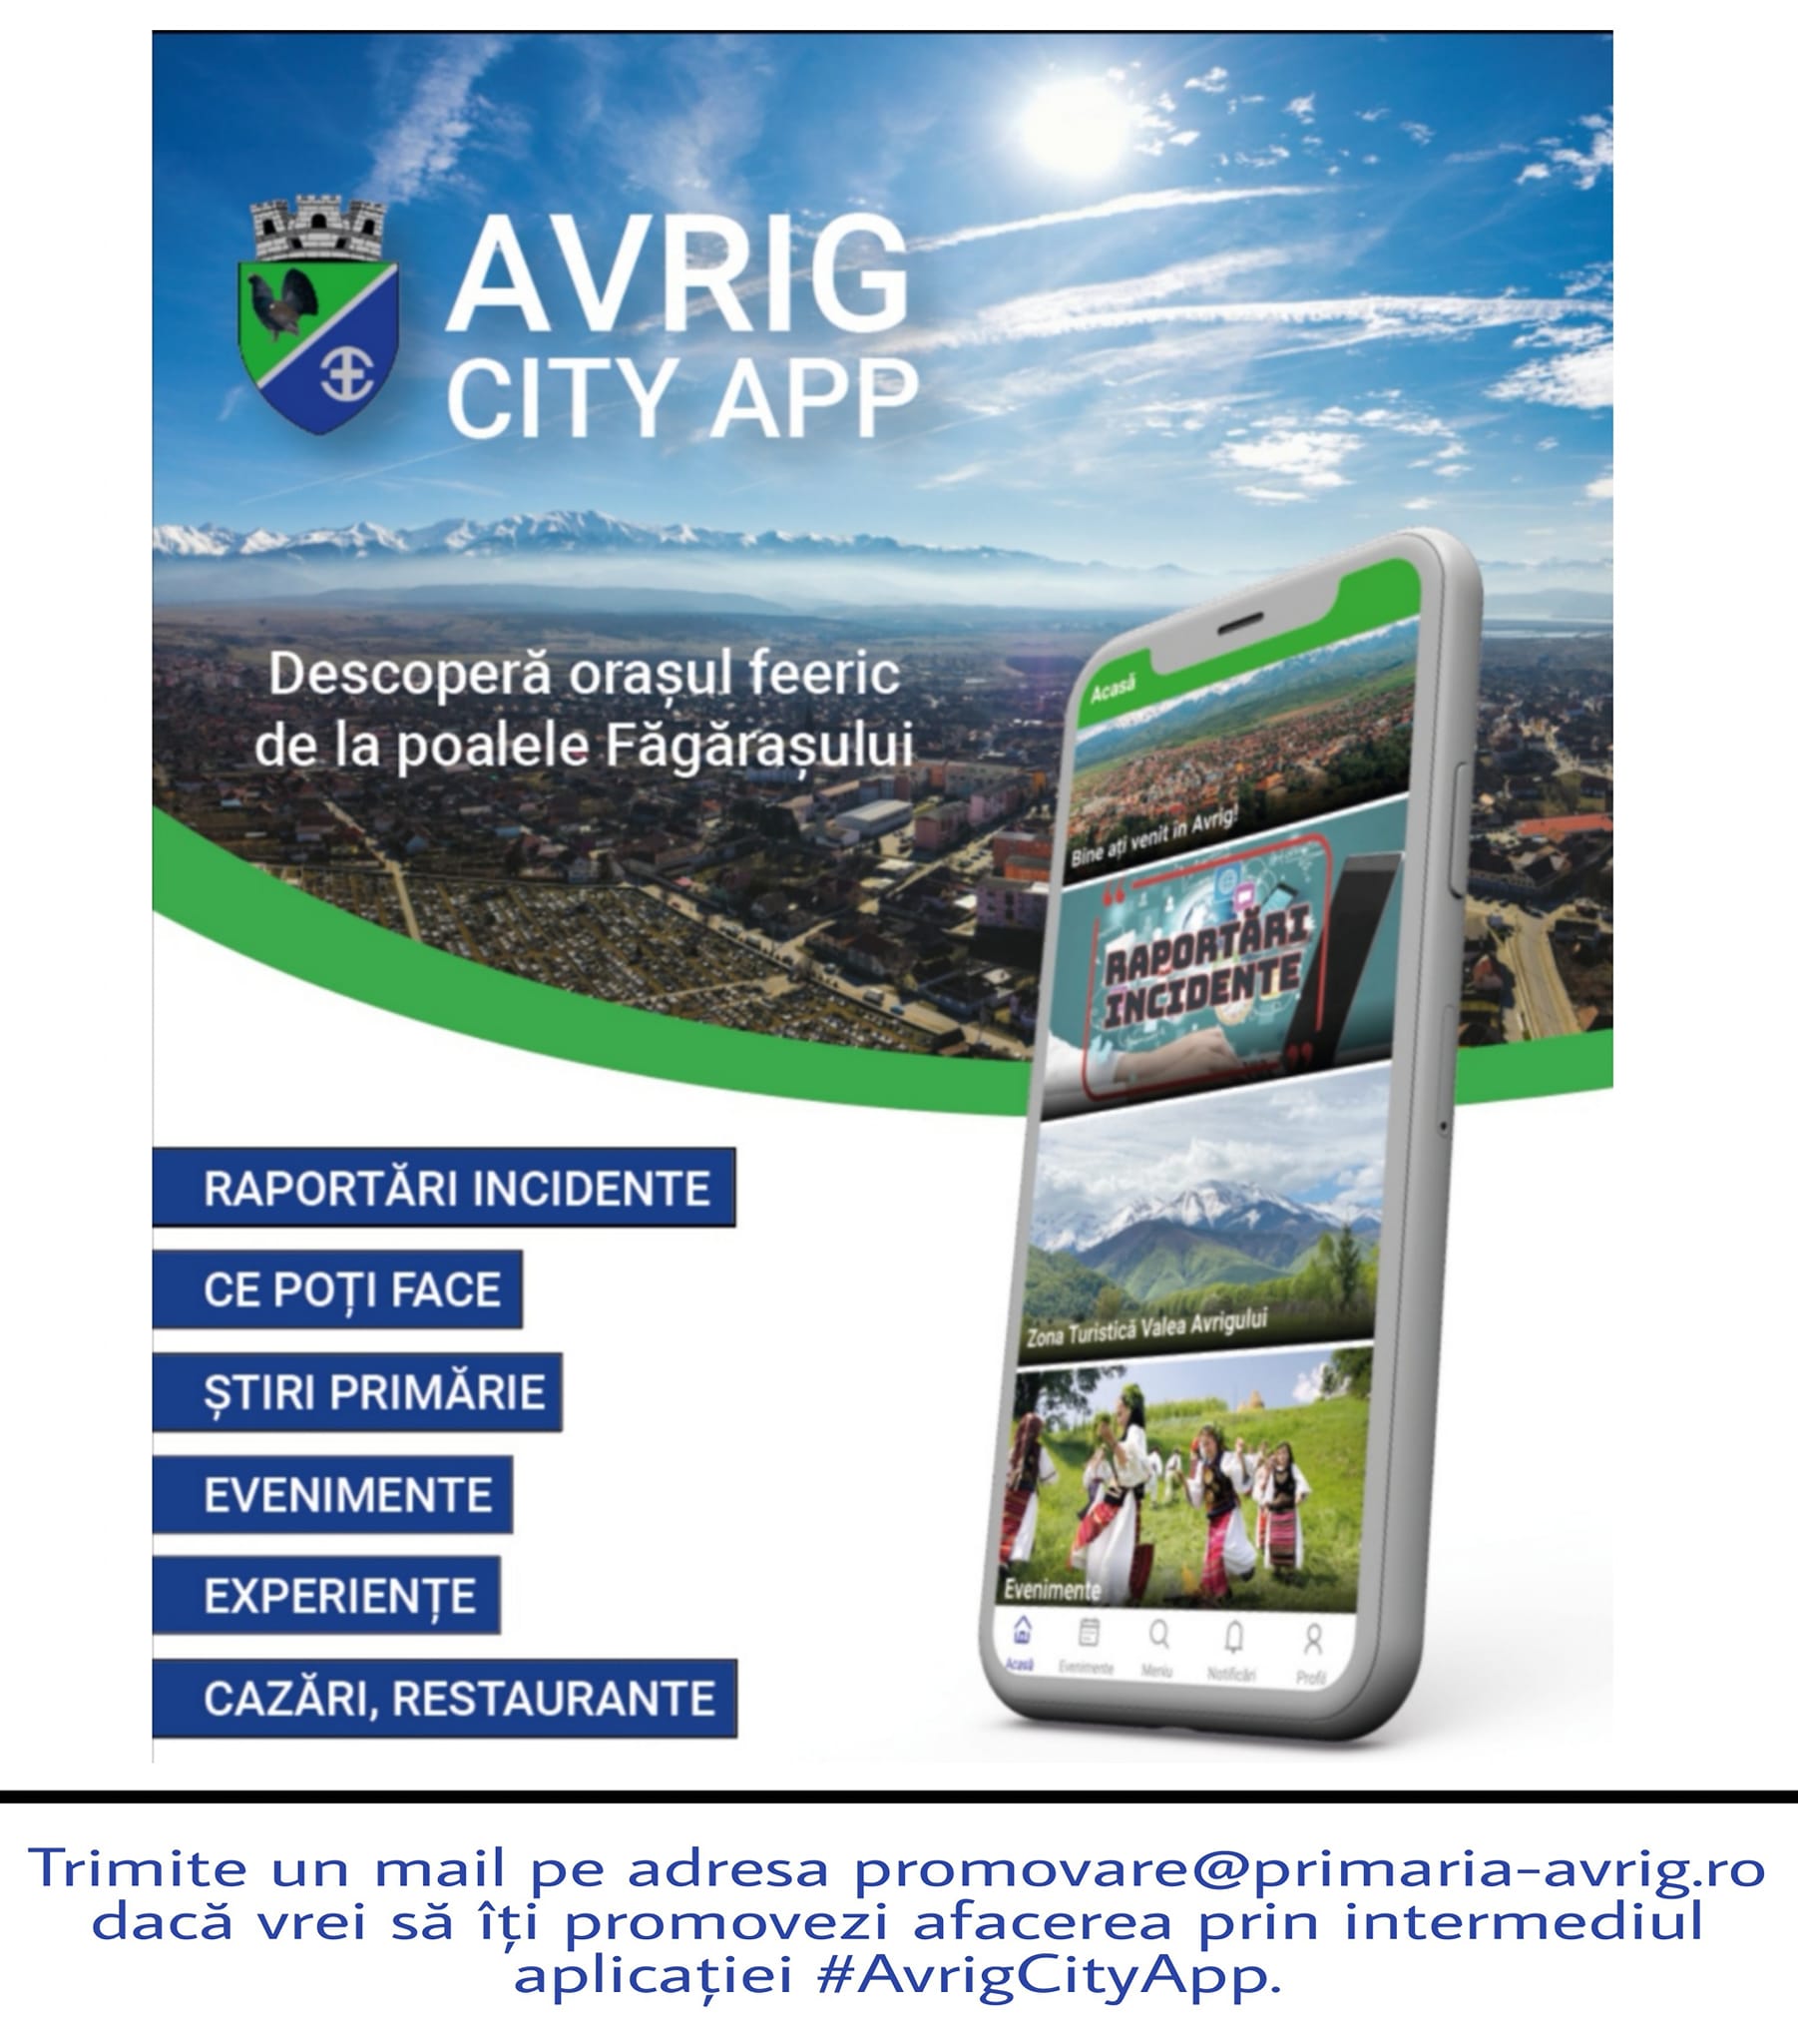 Promovează-te cu ajutorul aplicației Avrig City App!